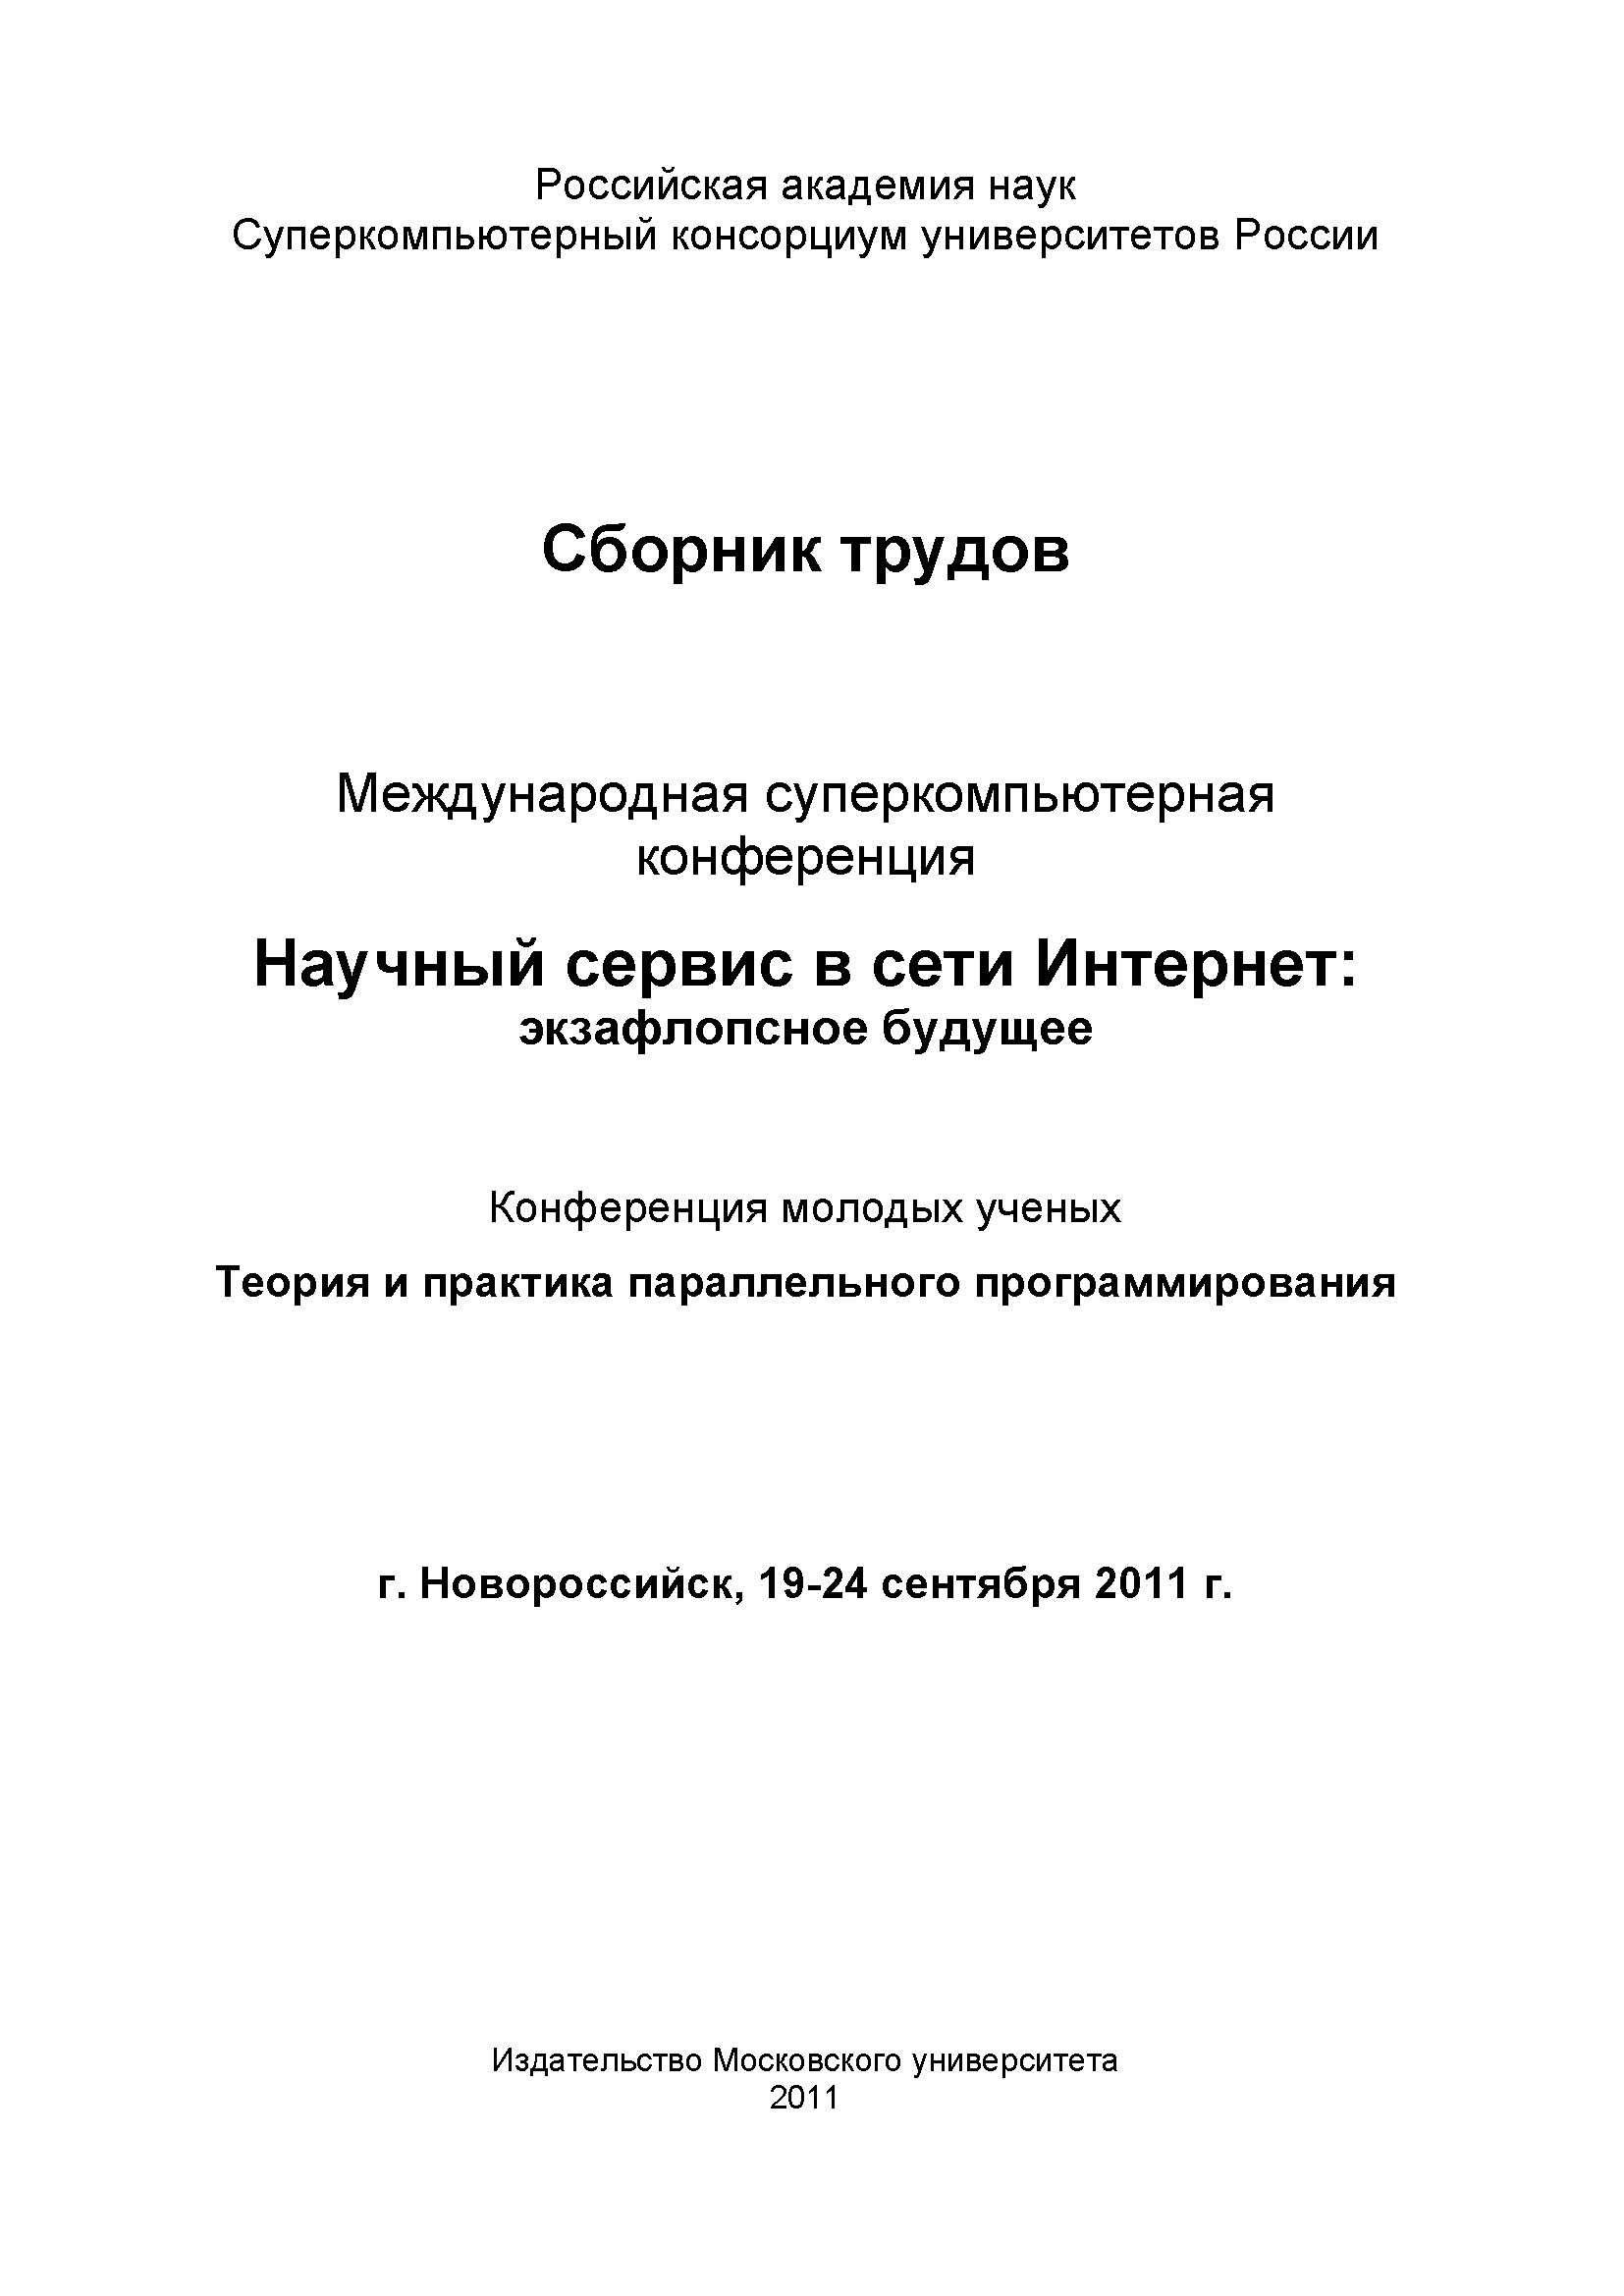 Научный сервис в сети Интернет: экзафлопсное будущее: Труды Международной суперкомпьютерной конференции (19-24 сентября 2011 г., г. Новороссийск)